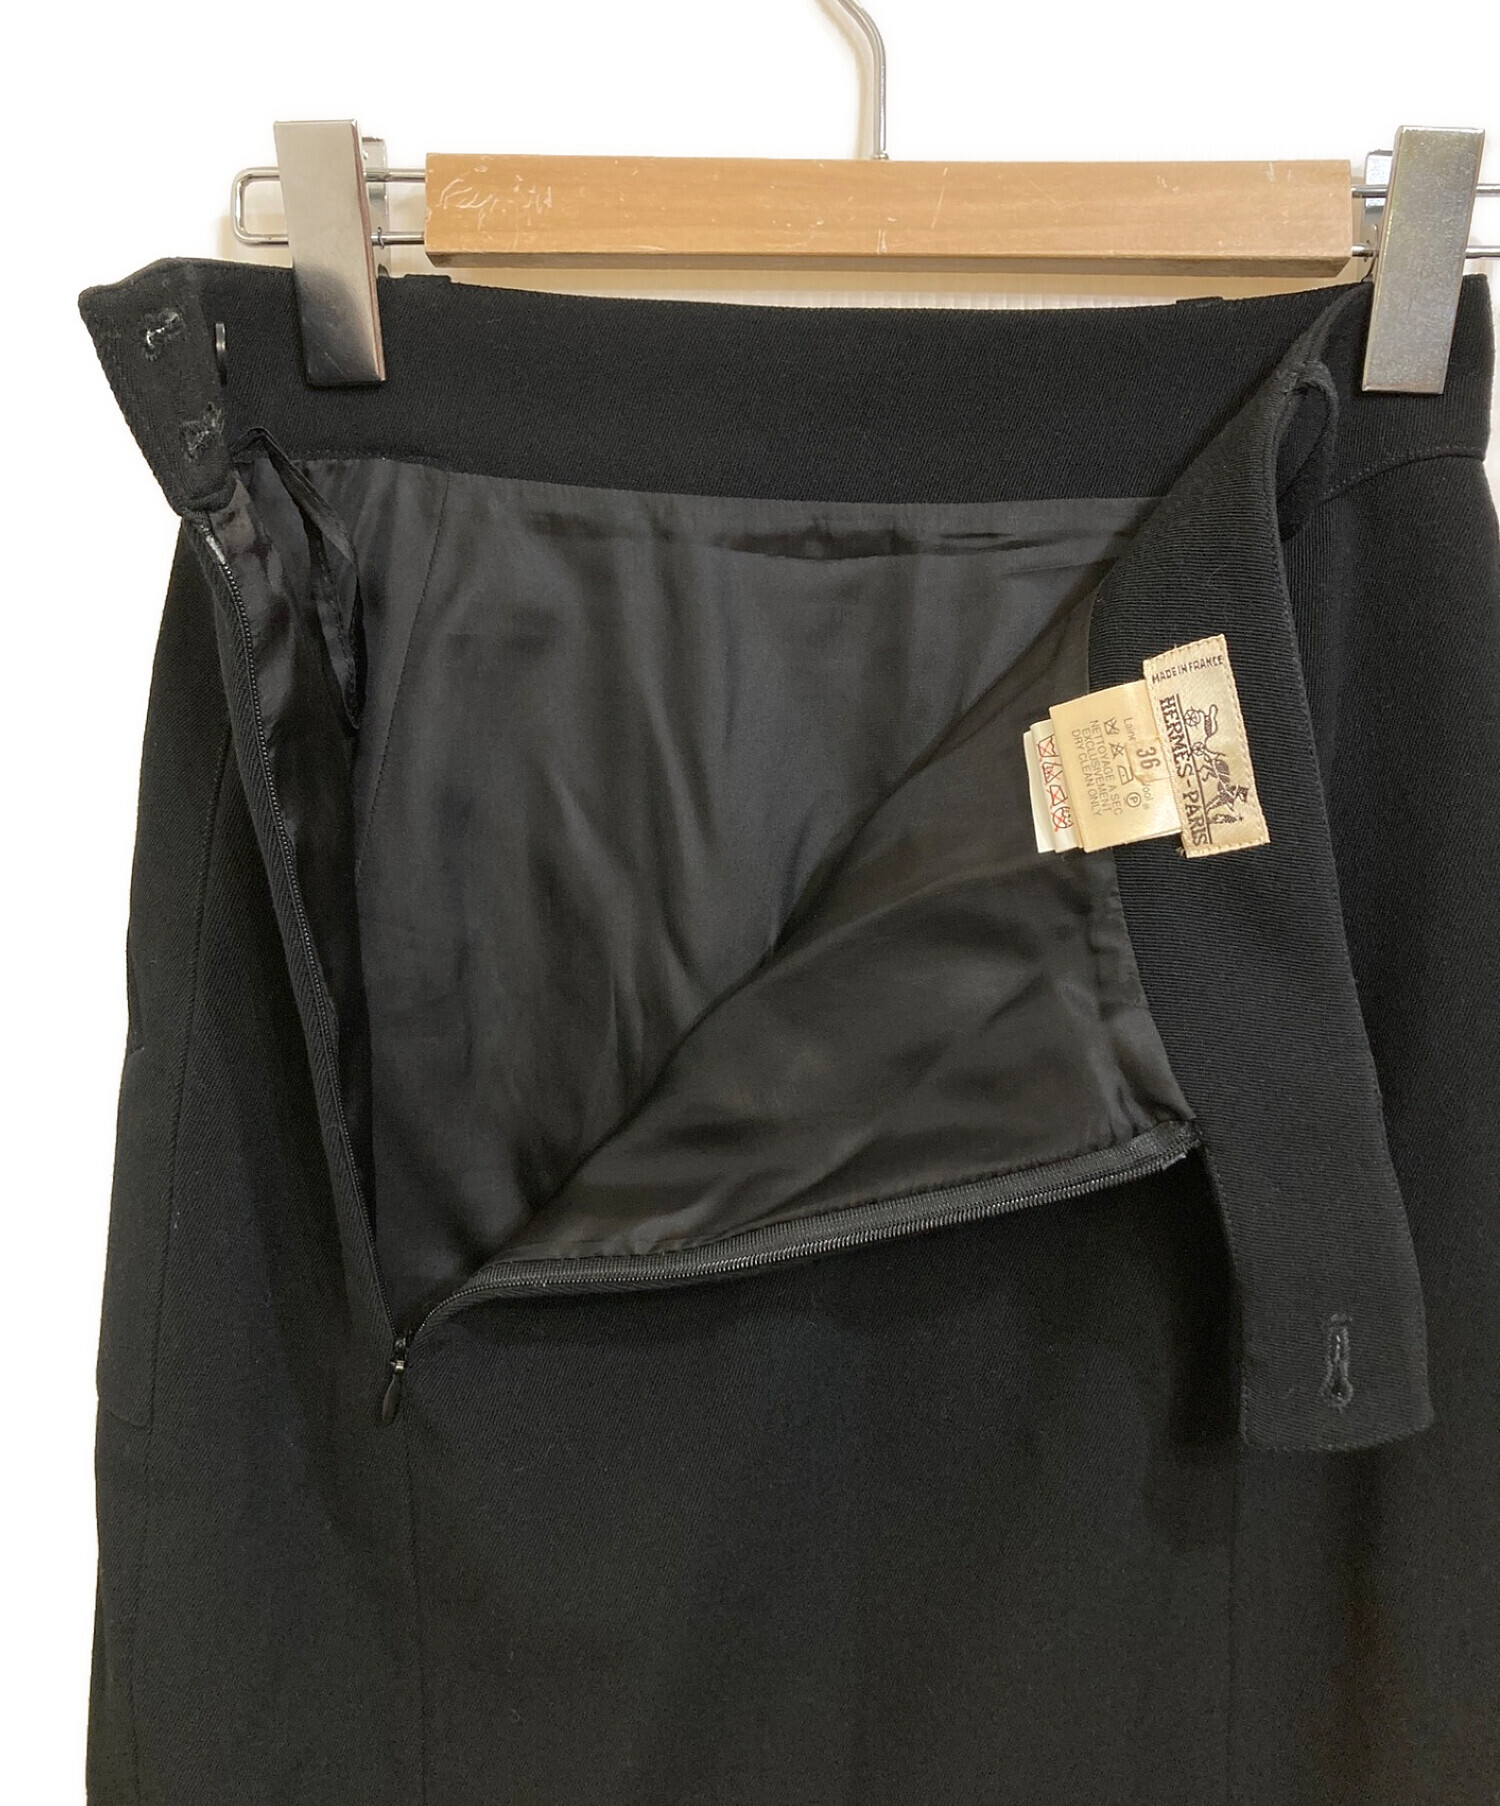 エルメス ロングスカート サイズ36 S - 黒スカート